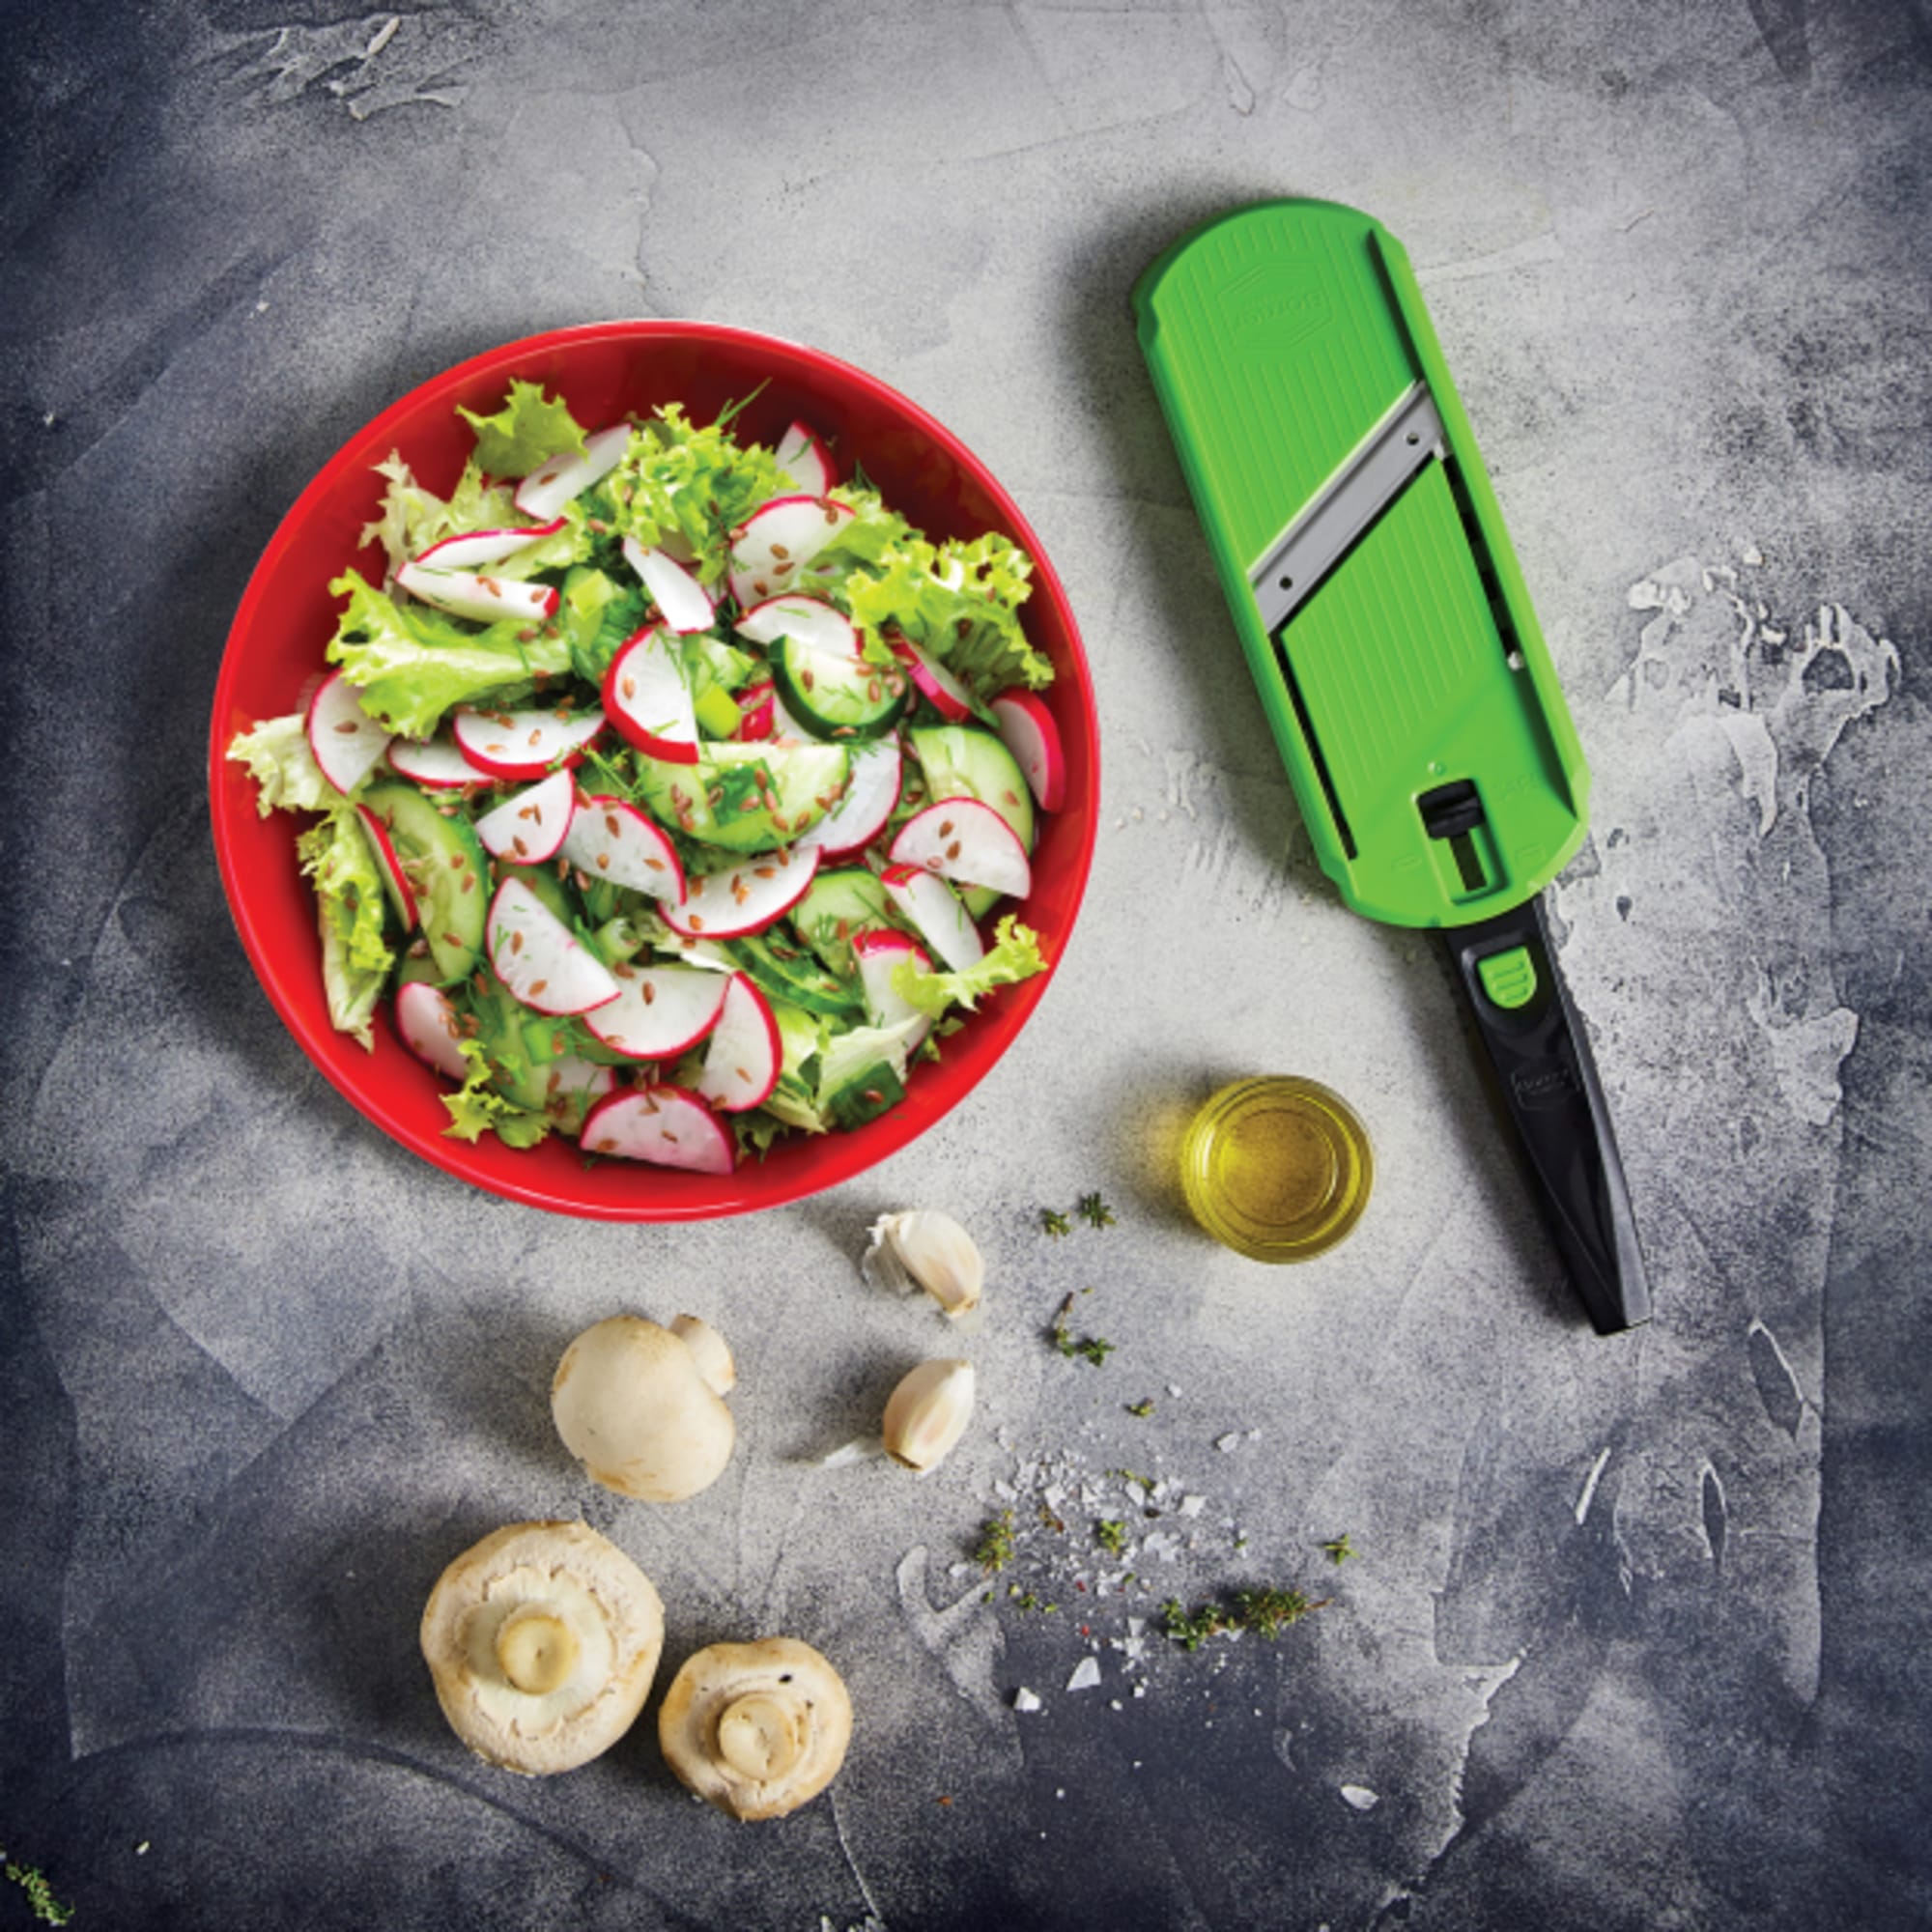 Mandolin Food Slicer 2.0 Stainless Steel Blade Vegetable Julienne Dicer  w/Holder